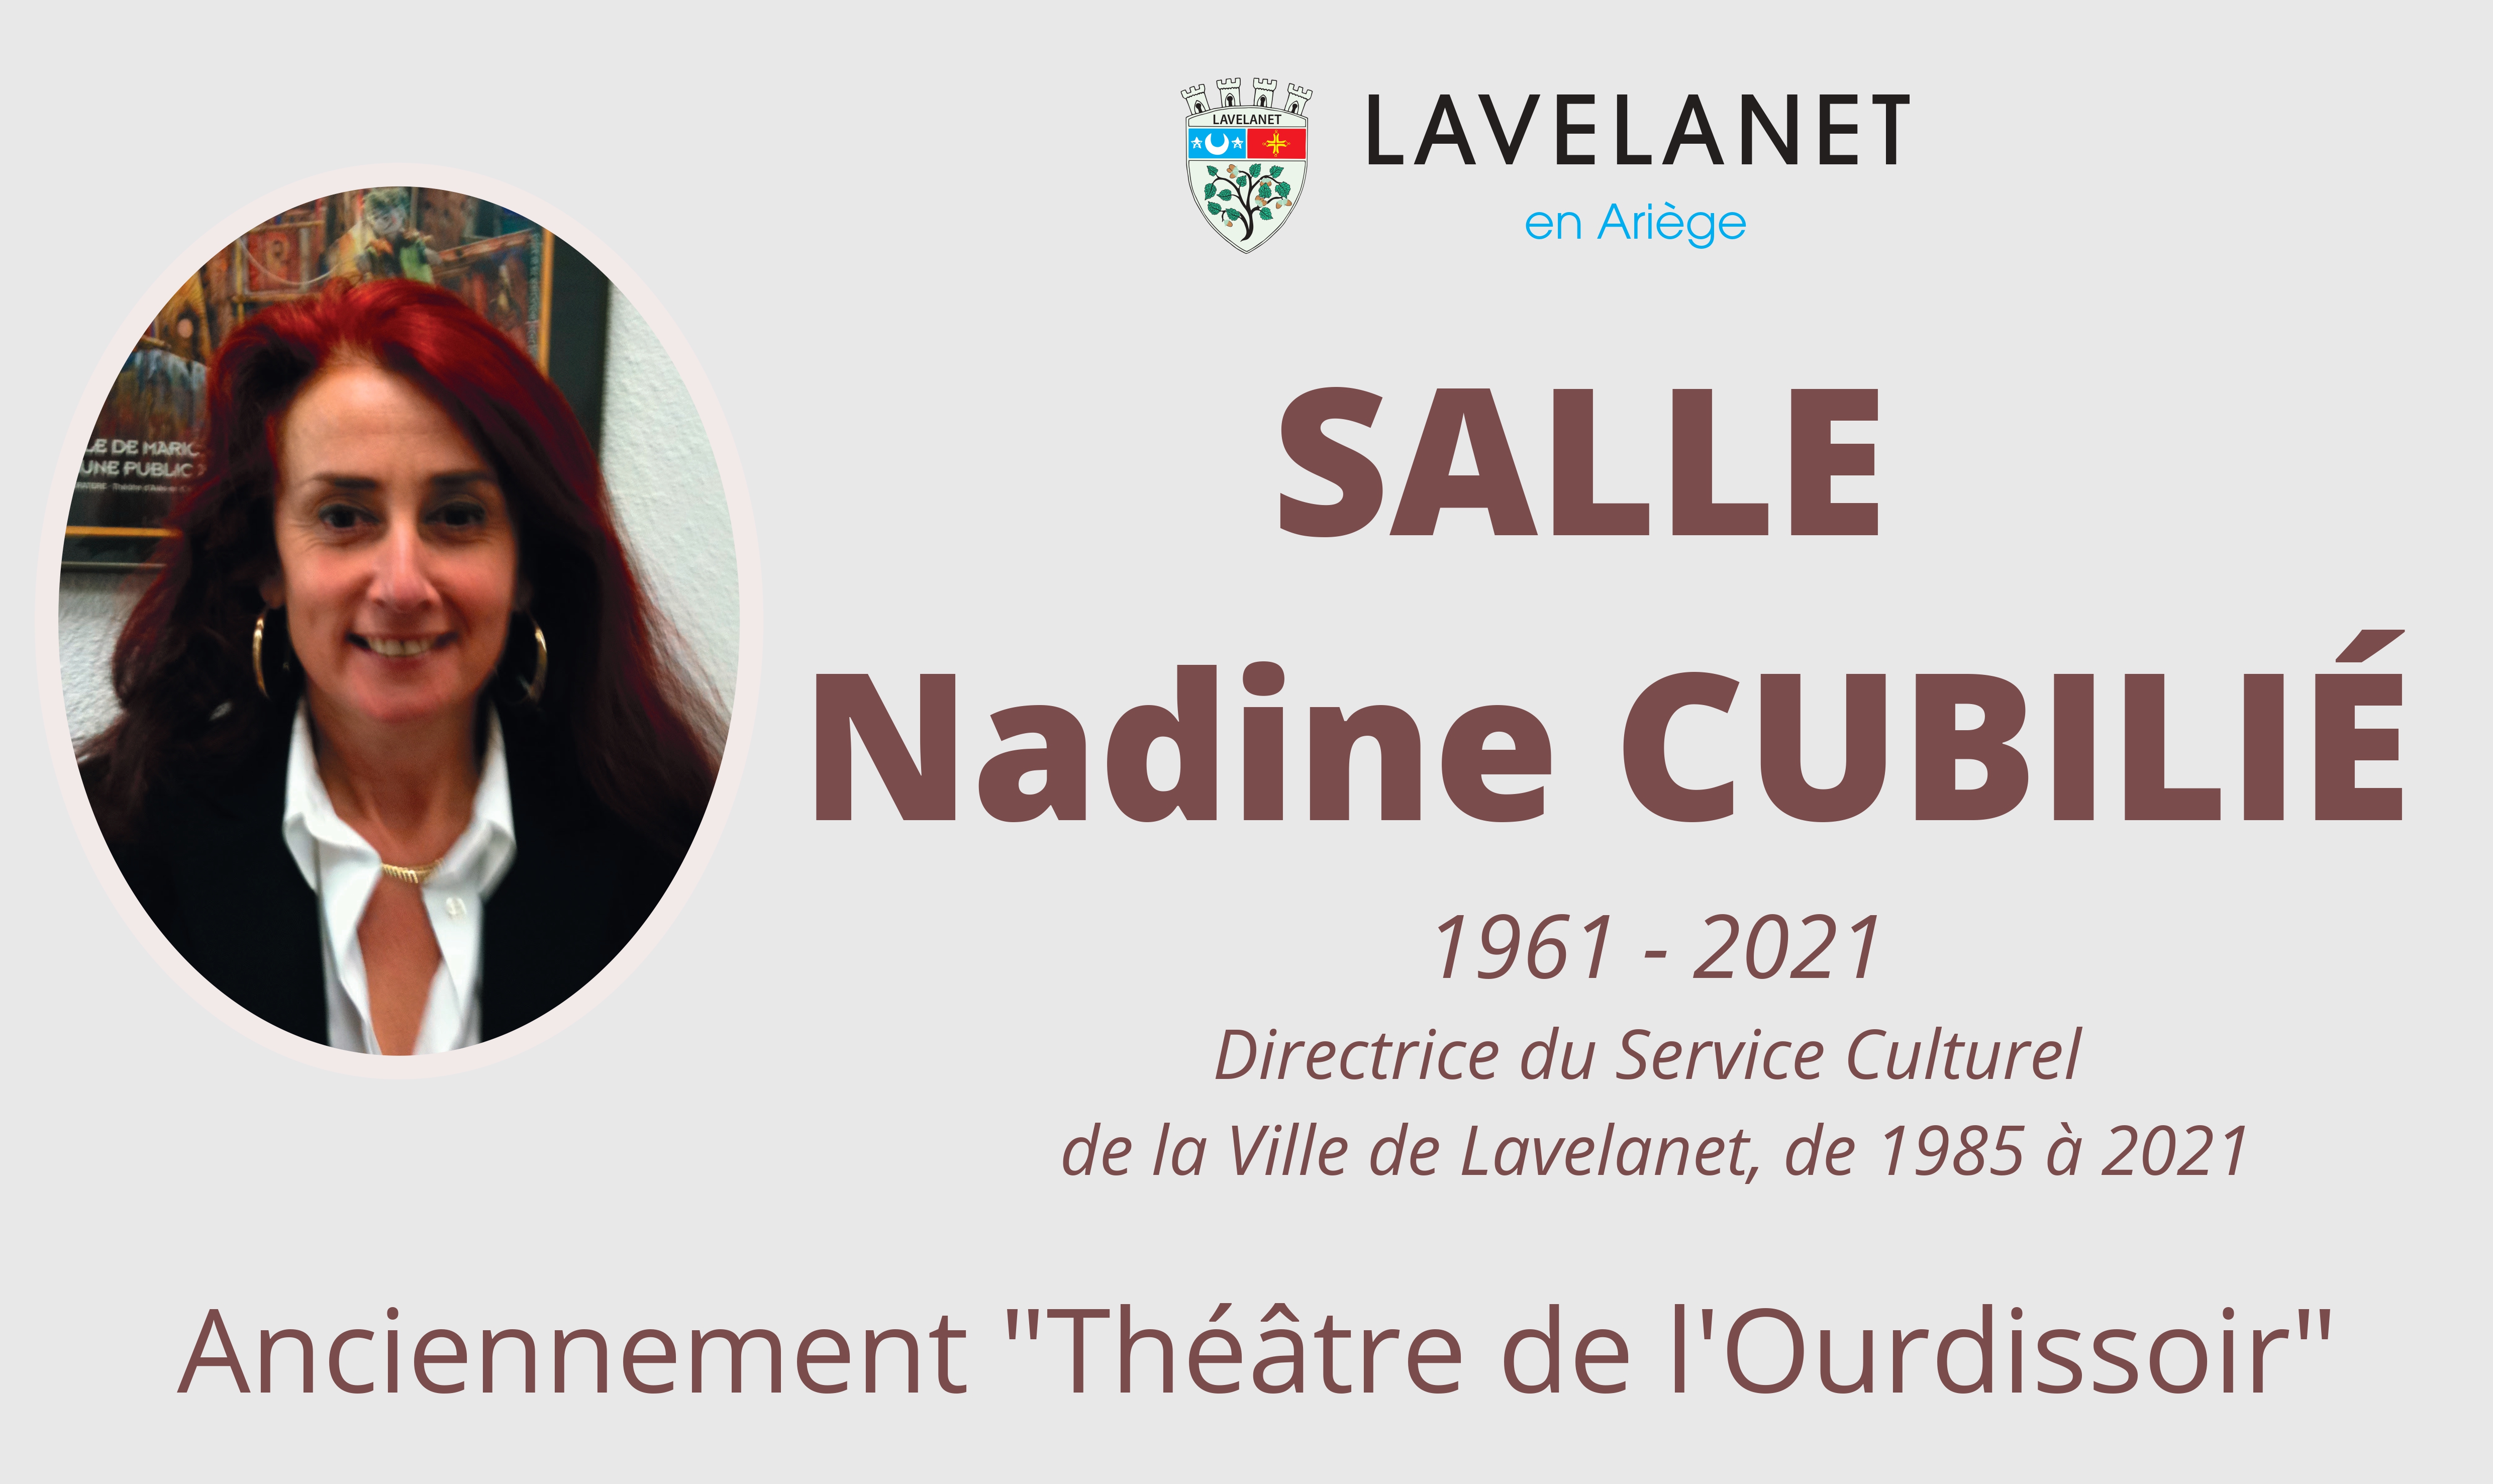 BAT - MAIRIE LAVELANET - Plaque Nadine CUBILIÉ - 840x500mm_page-0001.jpg